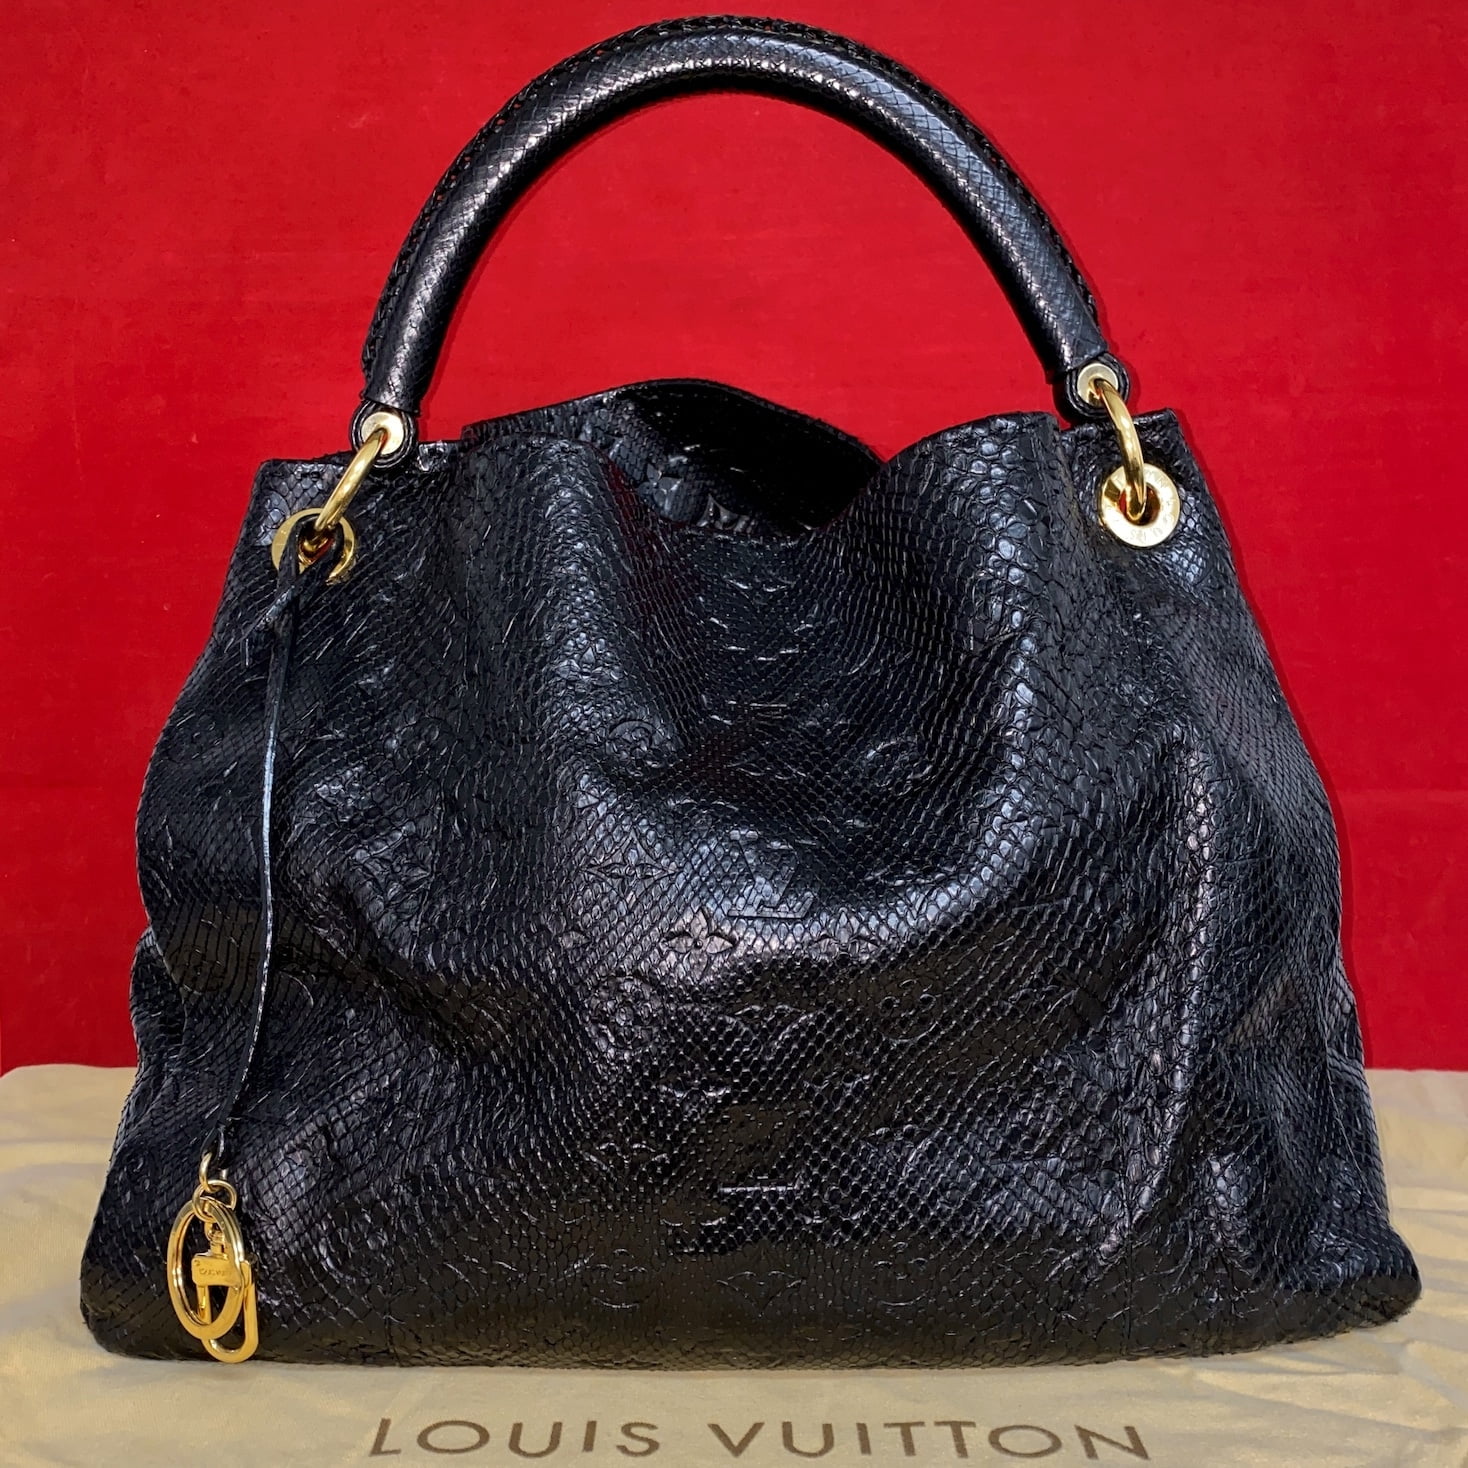 Louis Vuitton Artsy Python